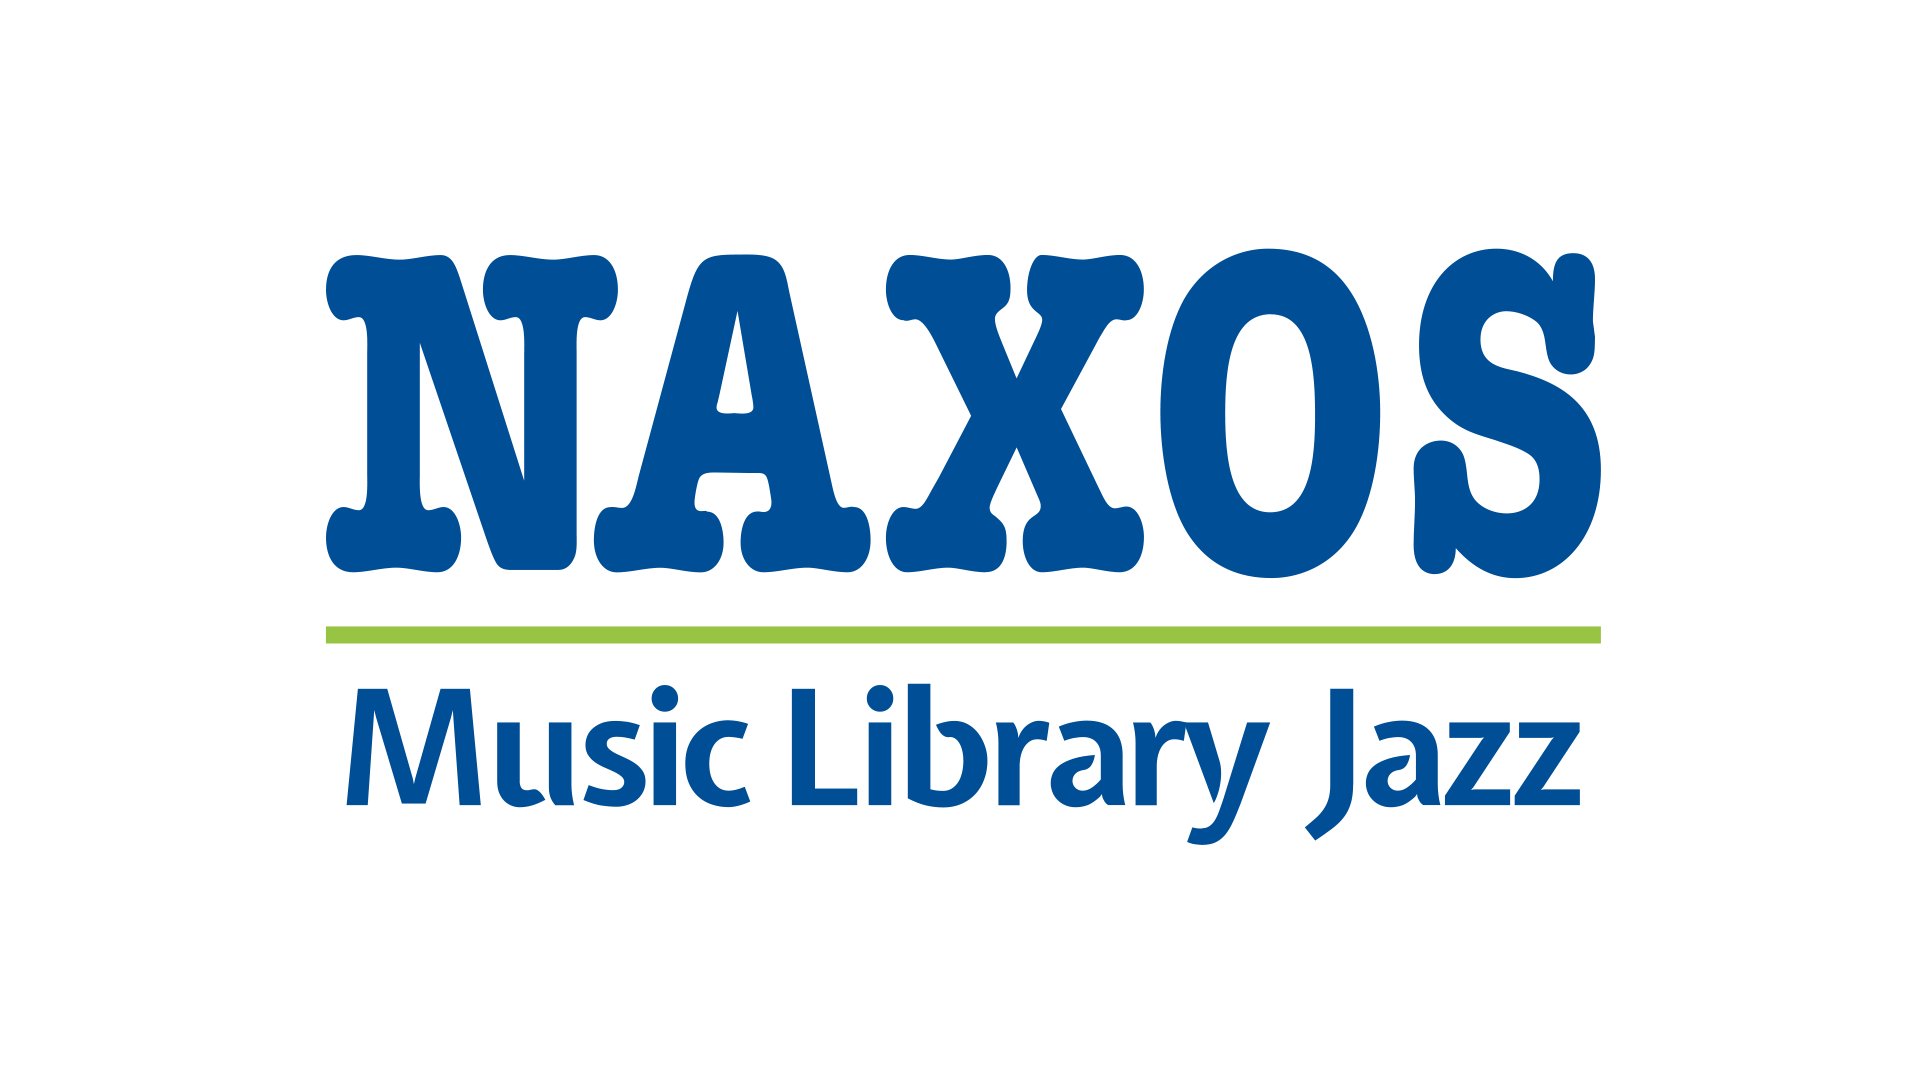 شعار مكتبة موسيقى الجاز في ناكسوس